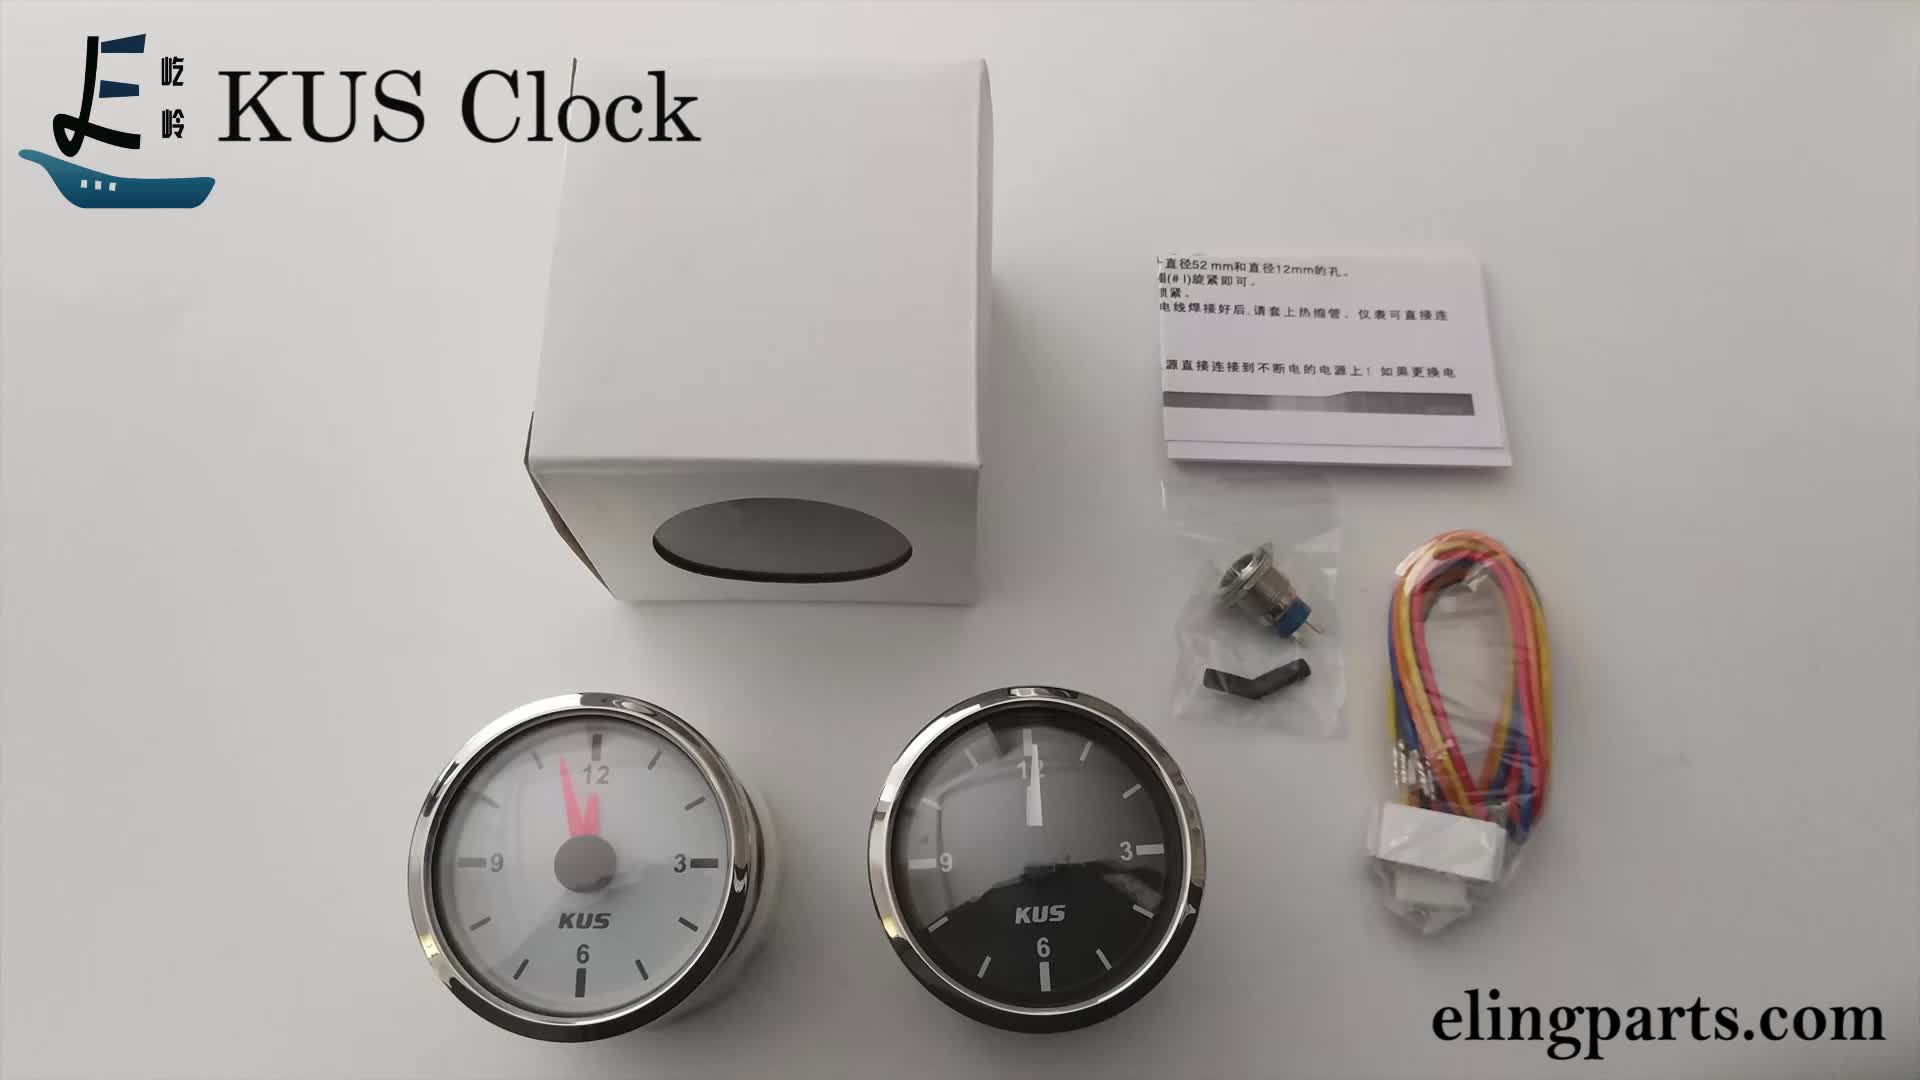 2 KUS Clock Meter Gauge 12-Hour Format with Backlight 52mm 12V/24V 